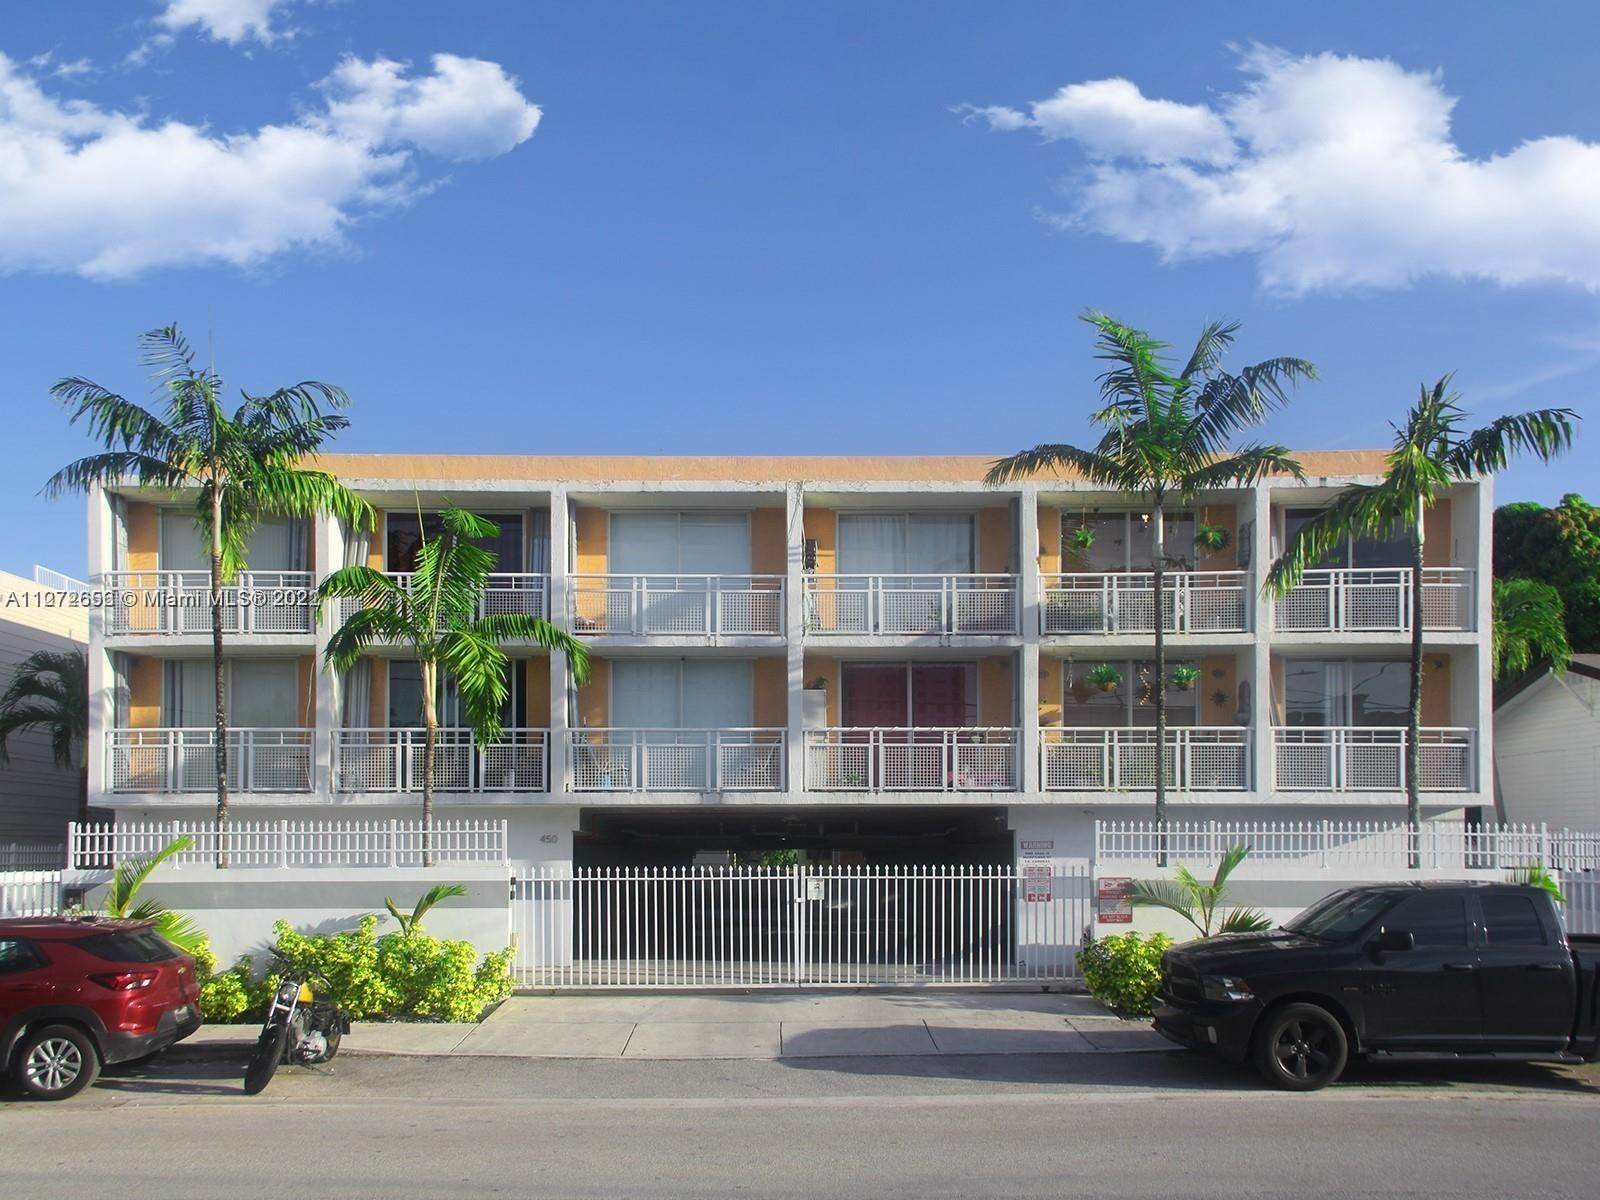 Condominium at Riverside, Miami, FL 33130